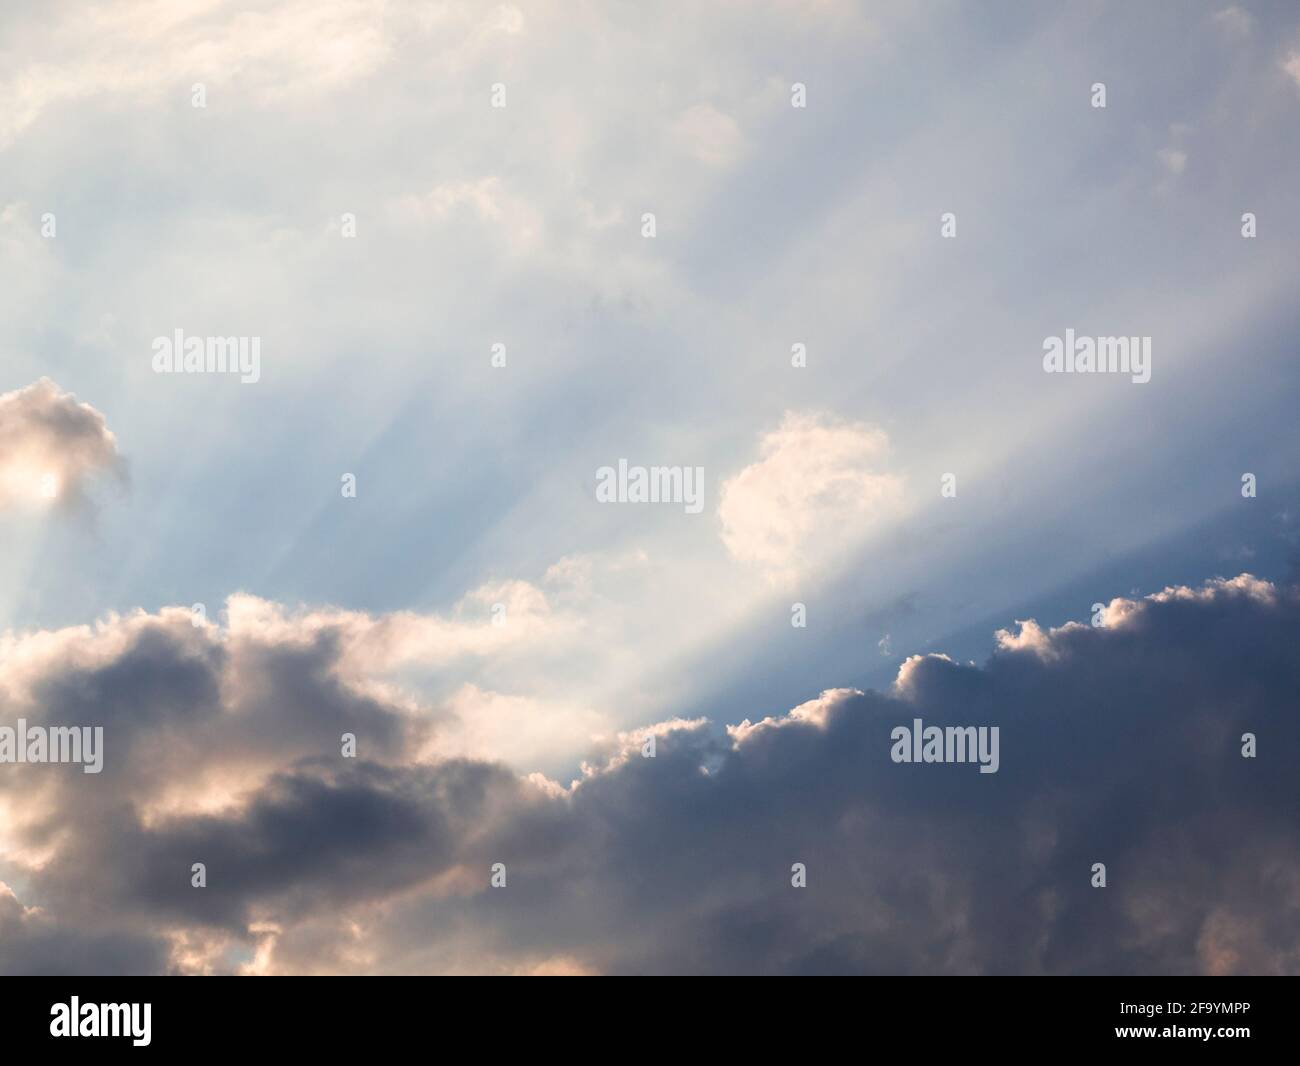 Rayos crepusculares del sol de la puesta a través de nubes causadas por partículas en la atmósfera. Foto de stock